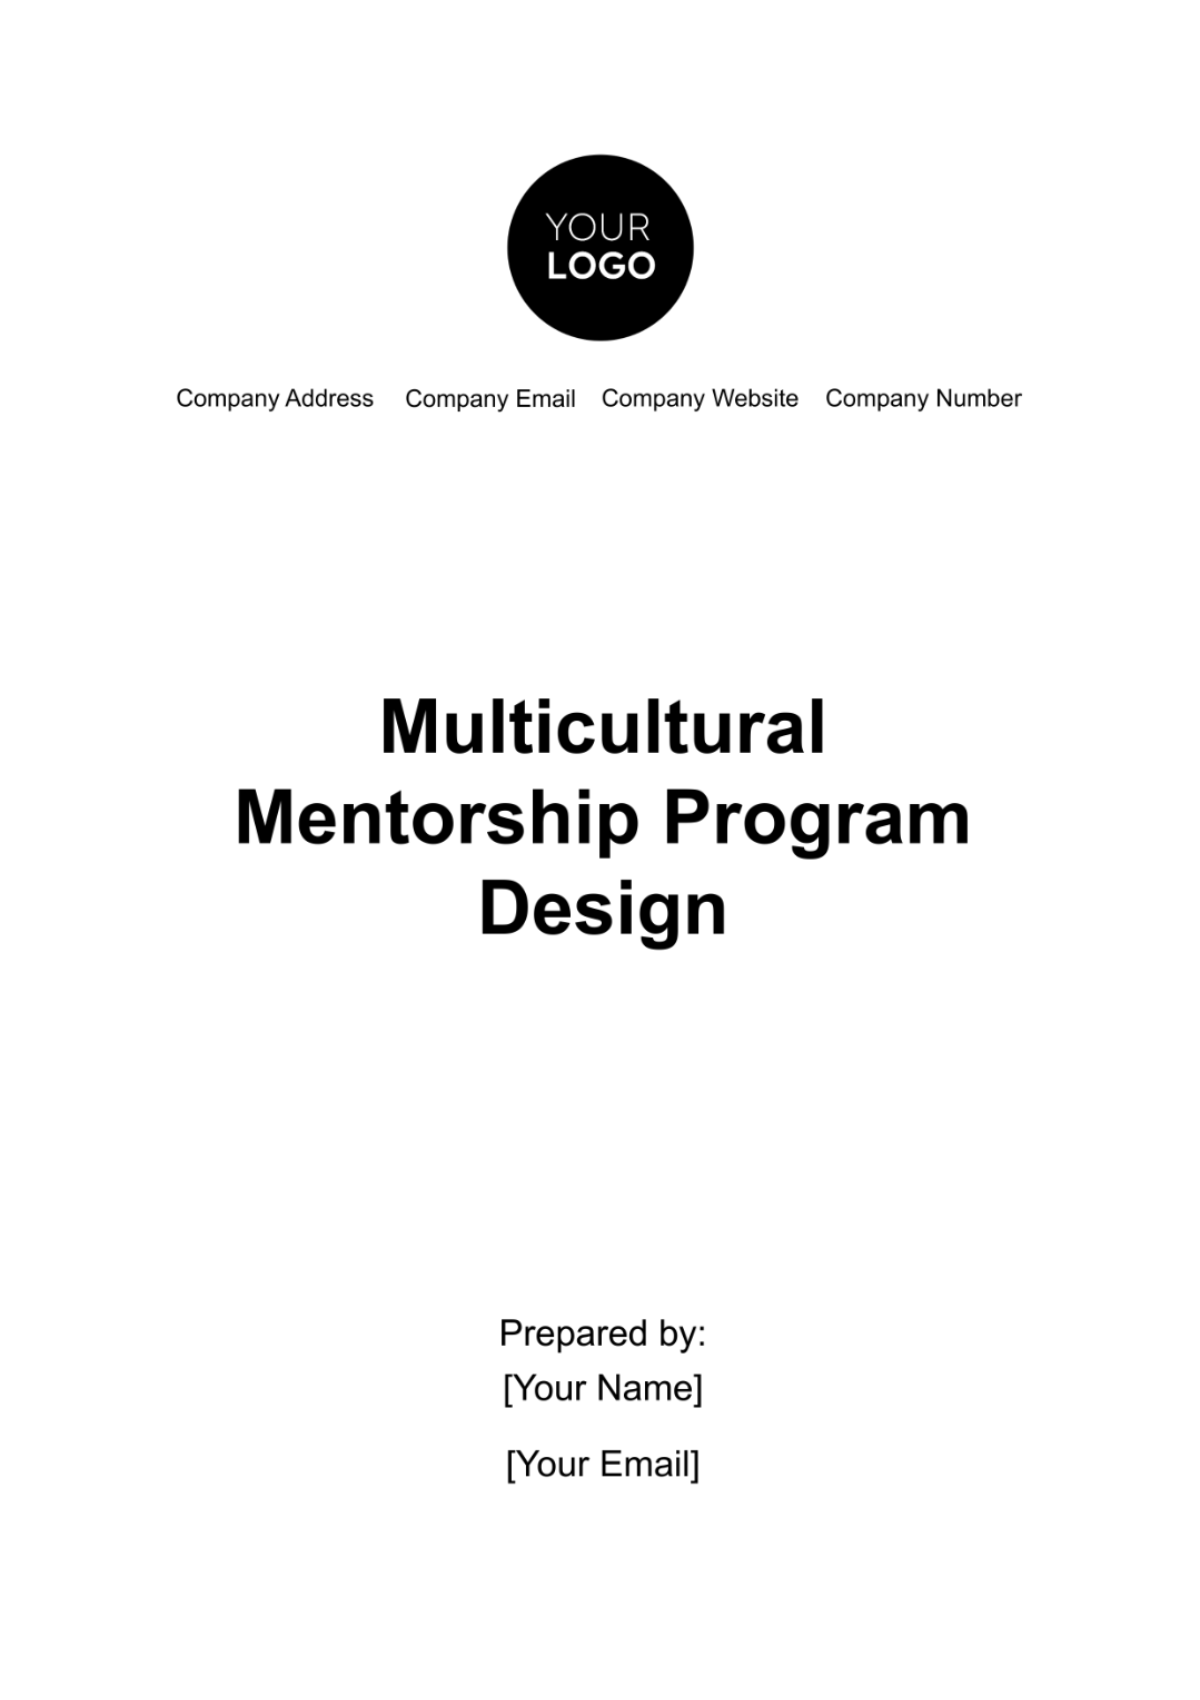 Free Multicultural Mentorship Program Design HR Template